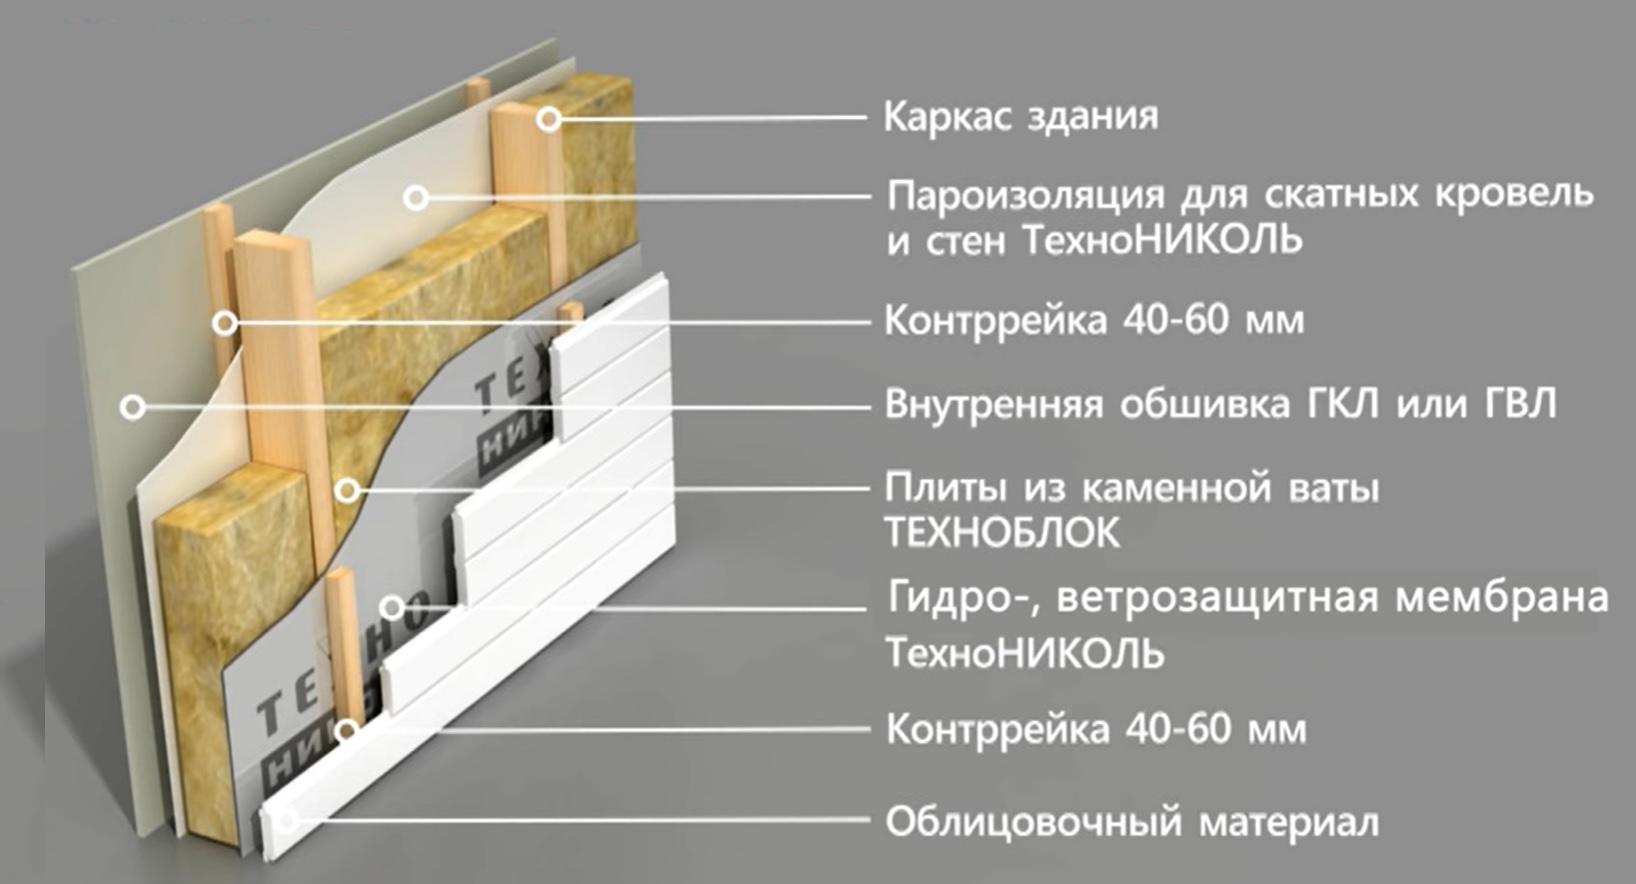 Каркасный дом своими руками: пошаговая инструкция сборки с фото